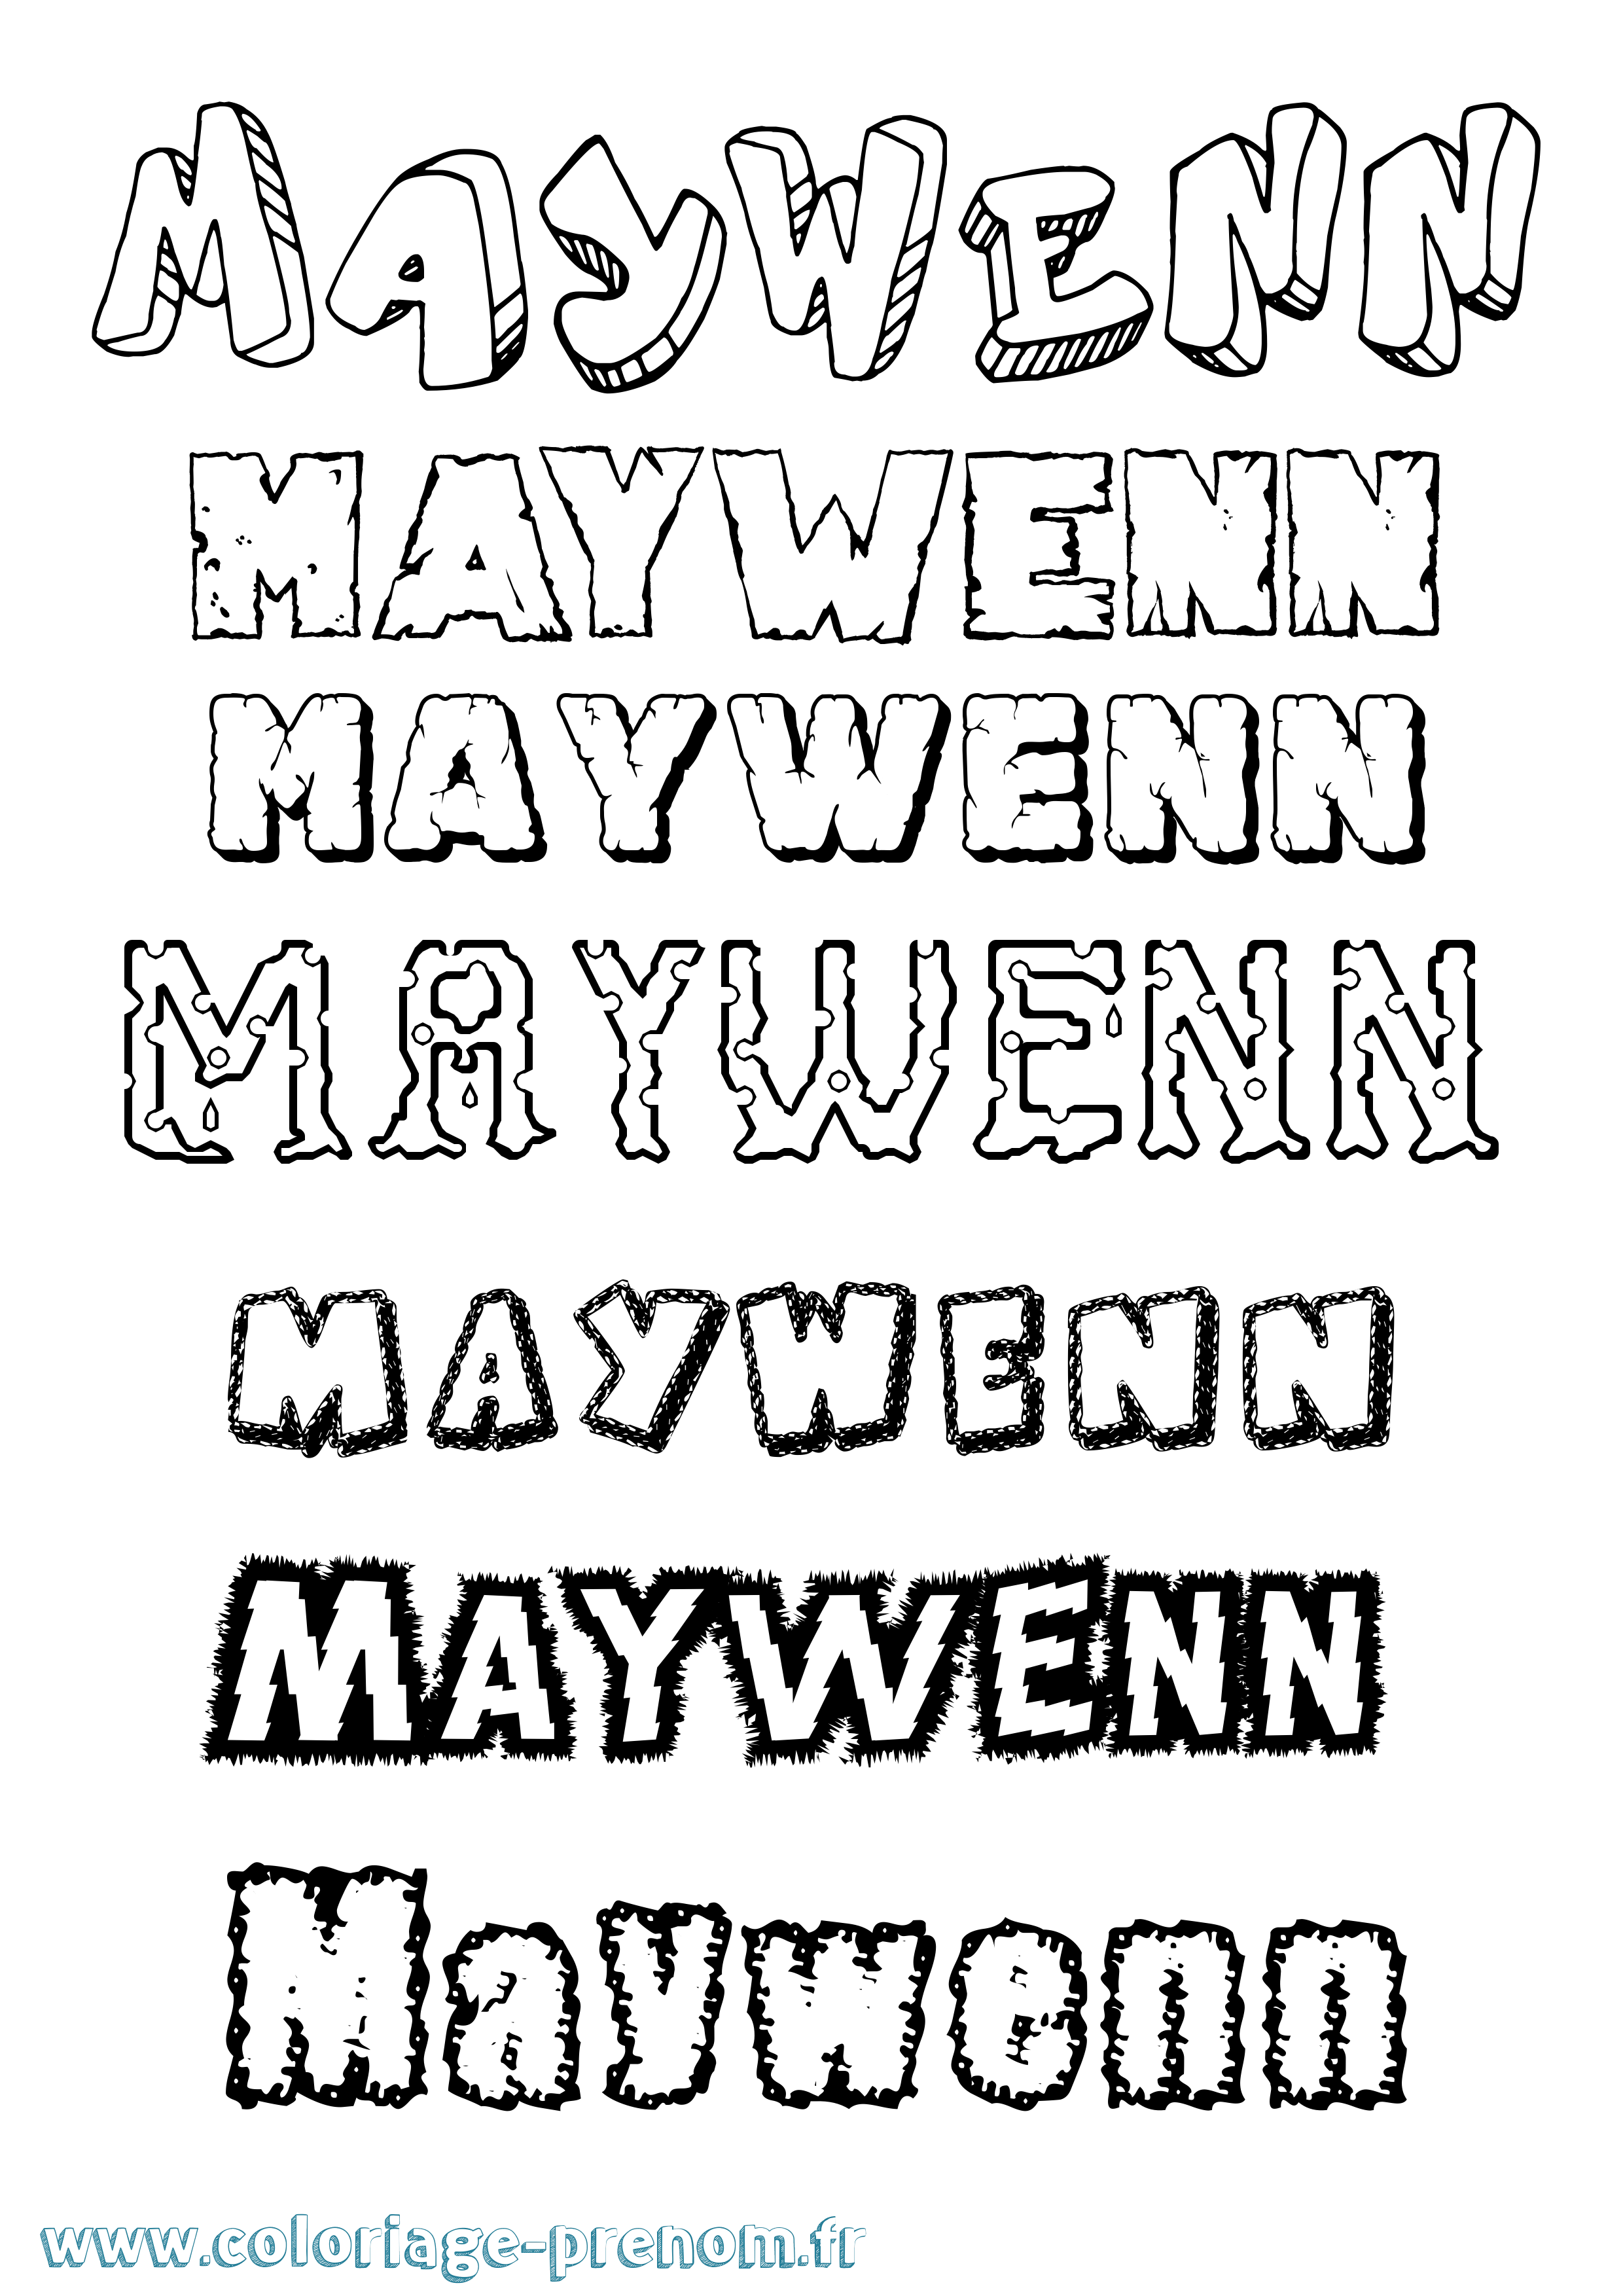 Coloriage prénom Maywenn Destructuré